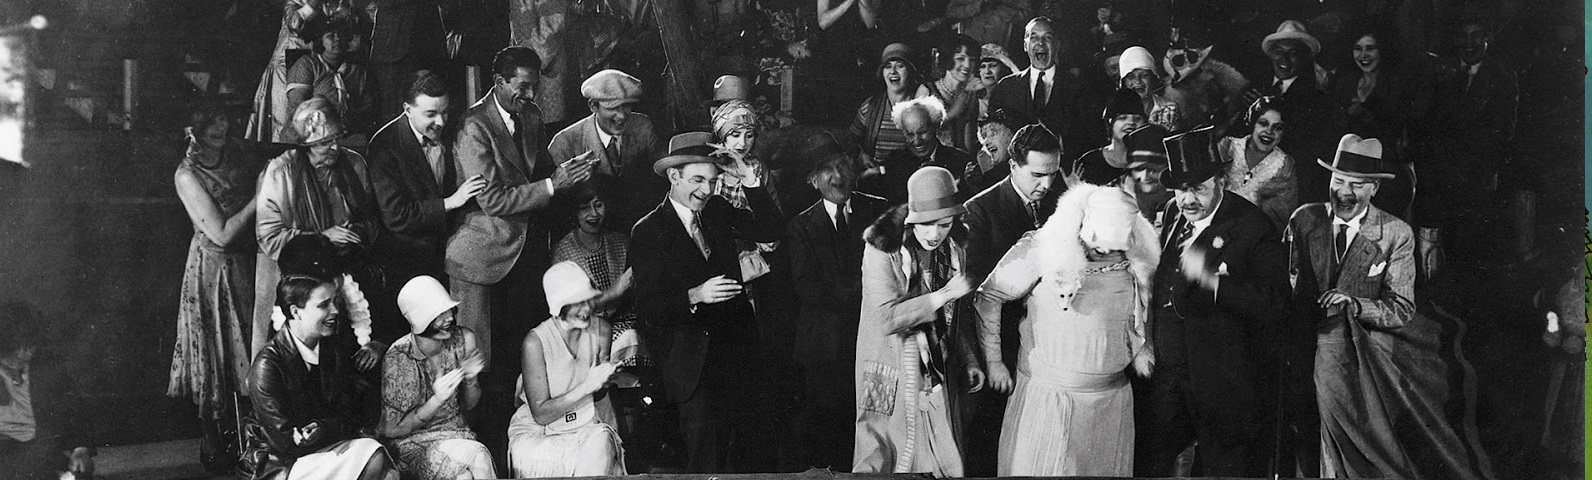 EL CIRCO (1928) con piano en directo con Federico Lechner